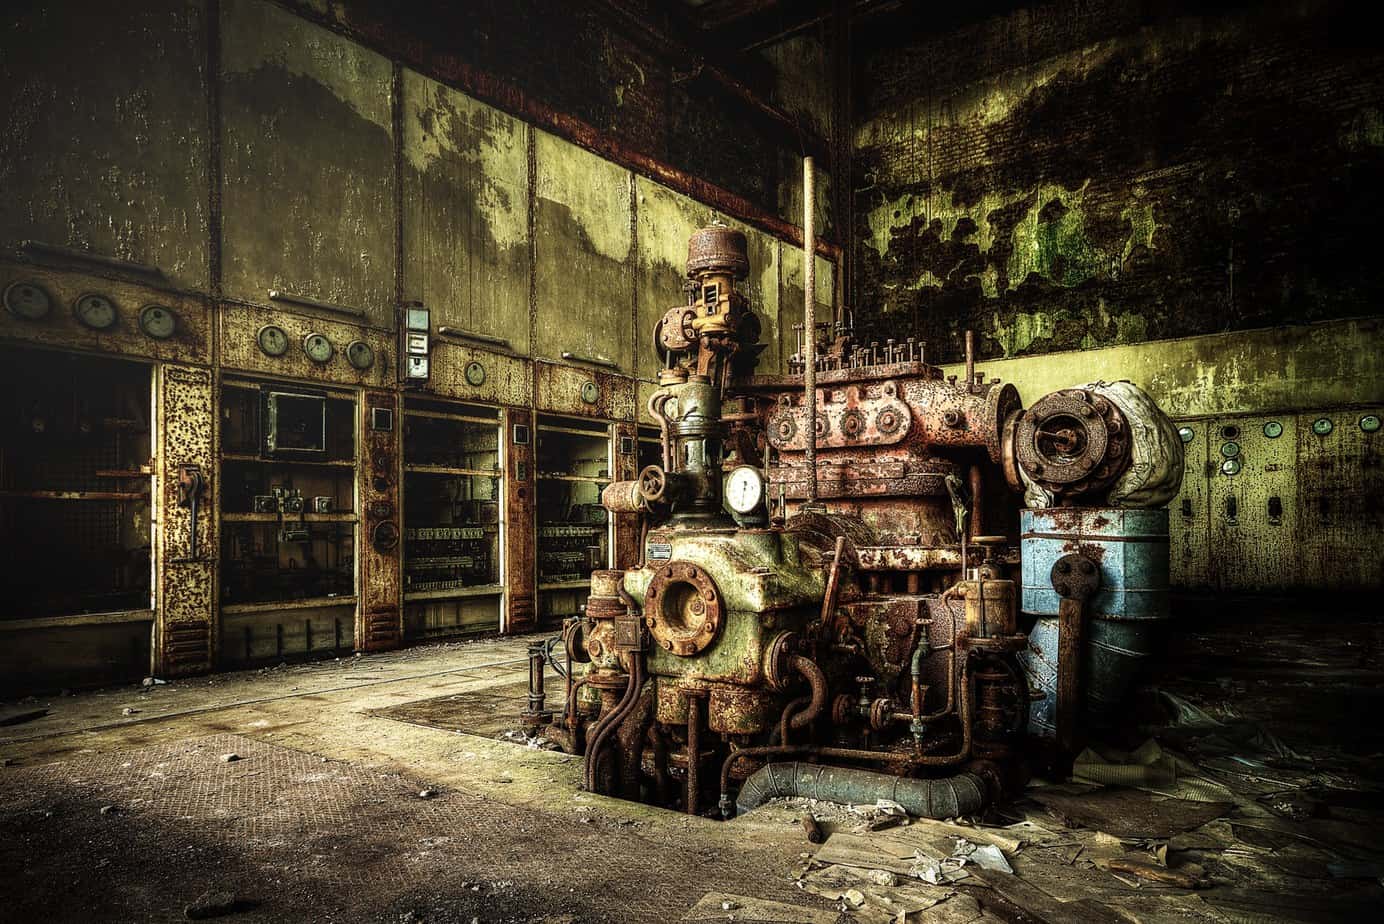 Fotografische Reise durch die verlassenen Hallen der Papierfabrik